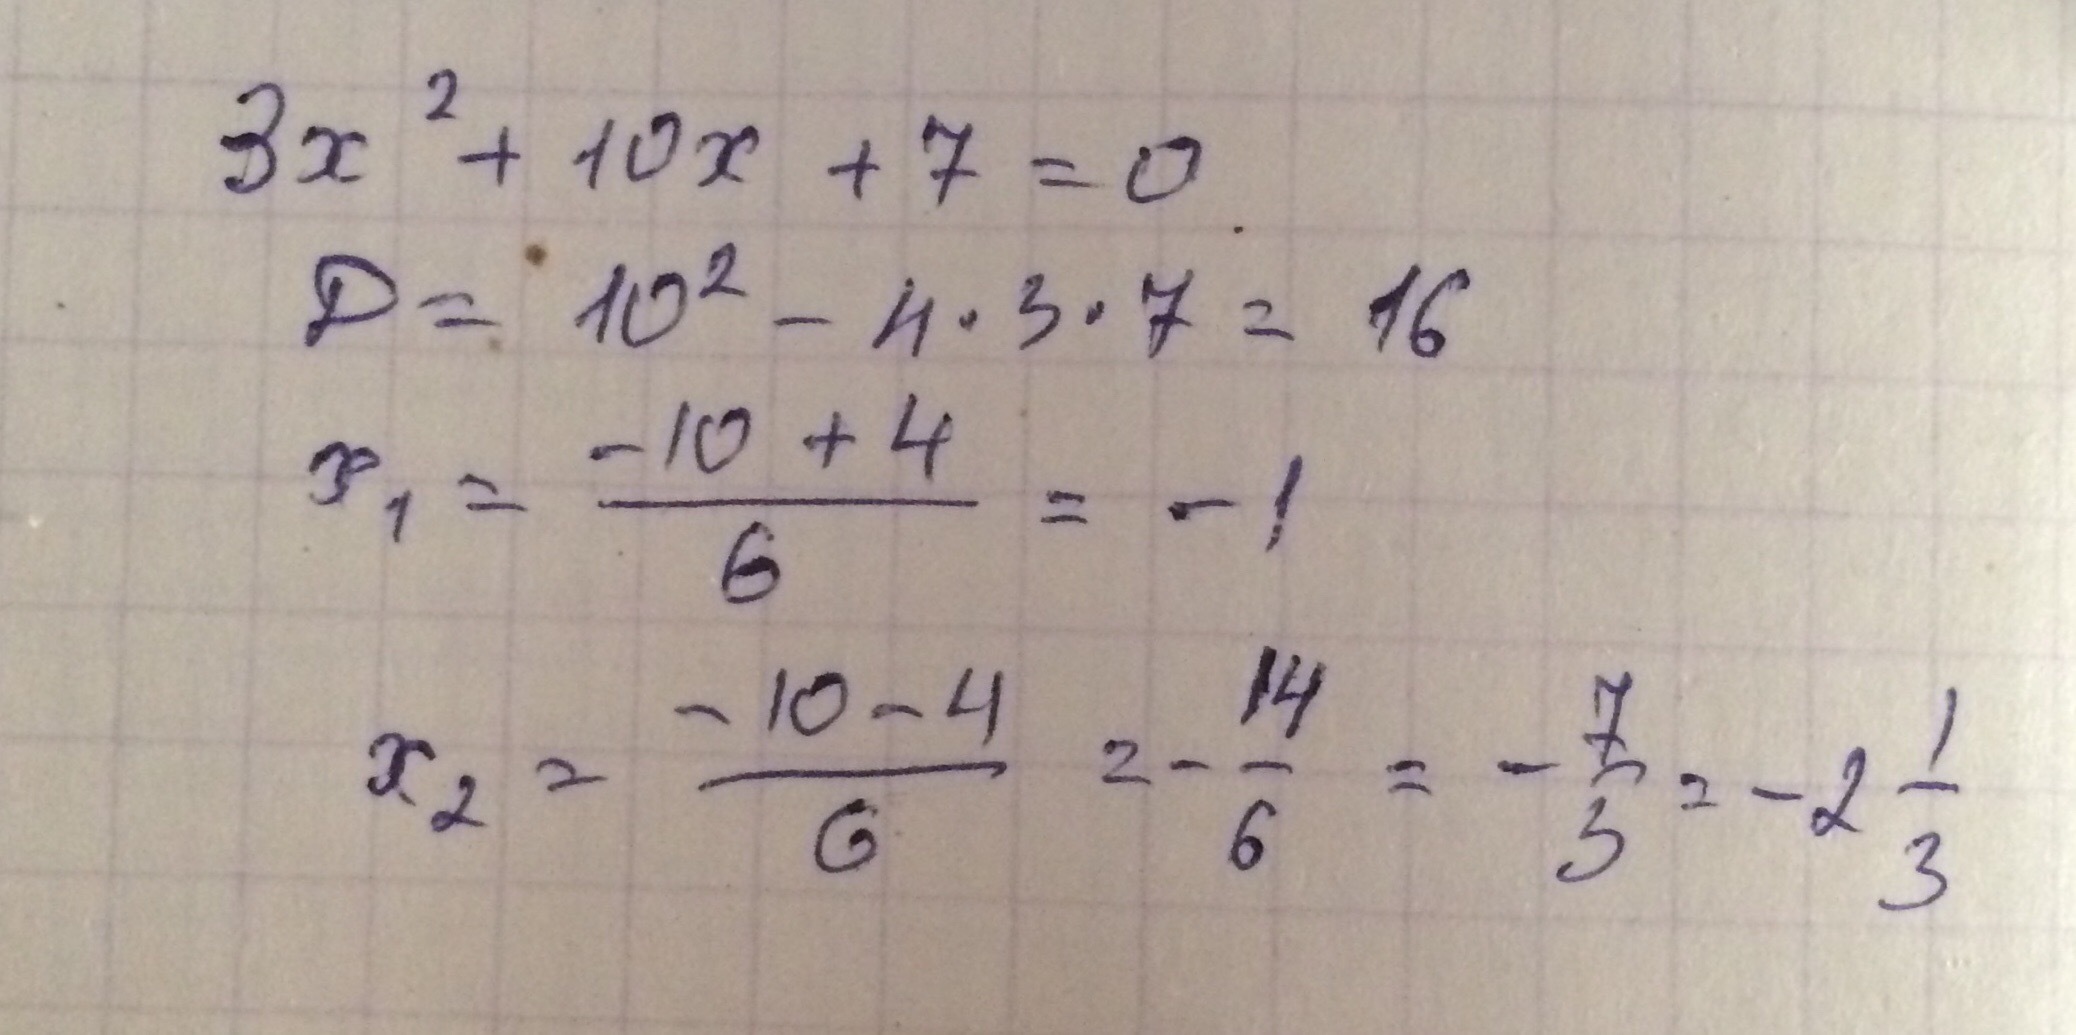 Икс икс 9 равно 10 3. X В квадрате плюс 3x равно 4. X В квадрате равно 3. Минус 3 в квадрате равно. Х В квадрате равно 3х.